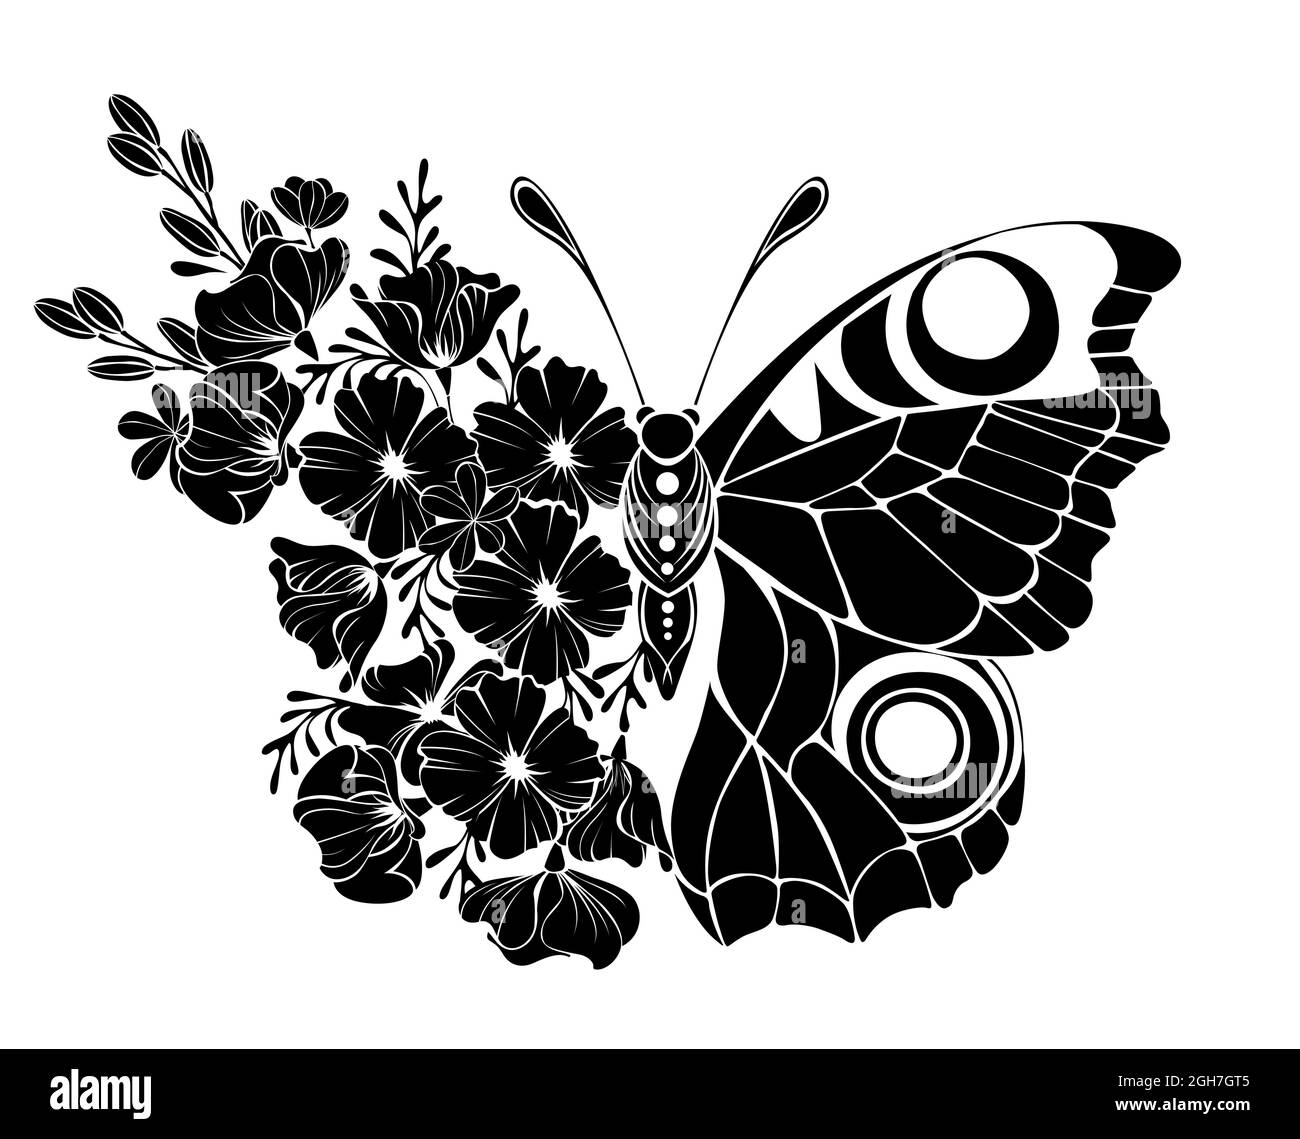 Mariposa flor negra, ojo de pavo real con ala decorada con amapola de California y plantas silvestres sobre fondo blanco. Ilustración del Vector